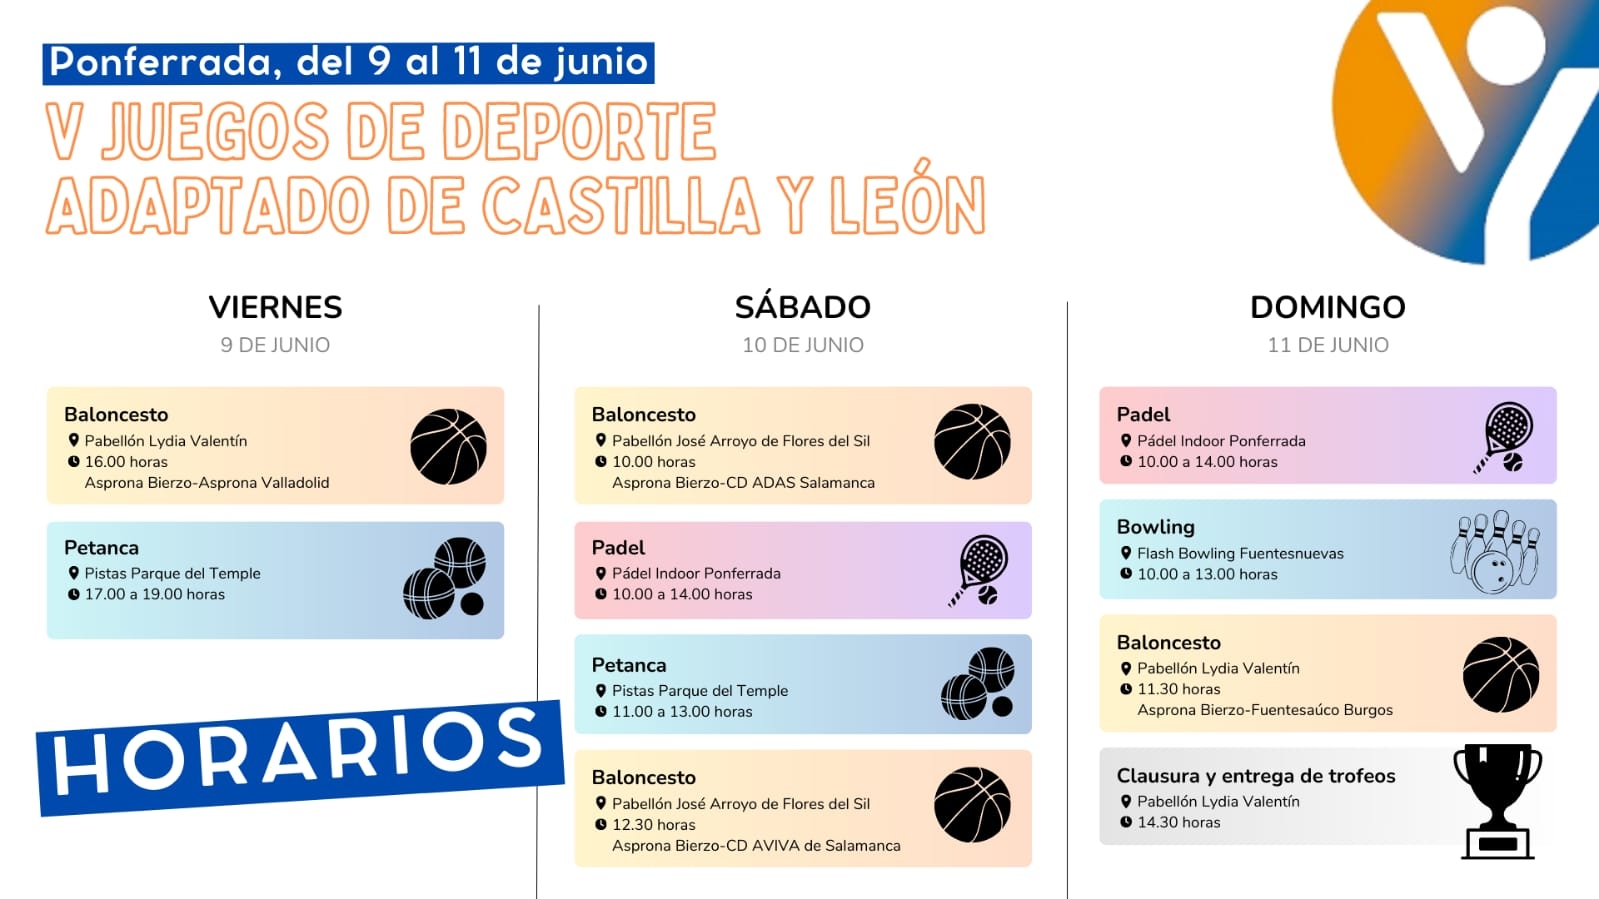 Los V Juegos de deporte adaptado de Castilla y León se celebran este fin de semana en Ponferrada 3